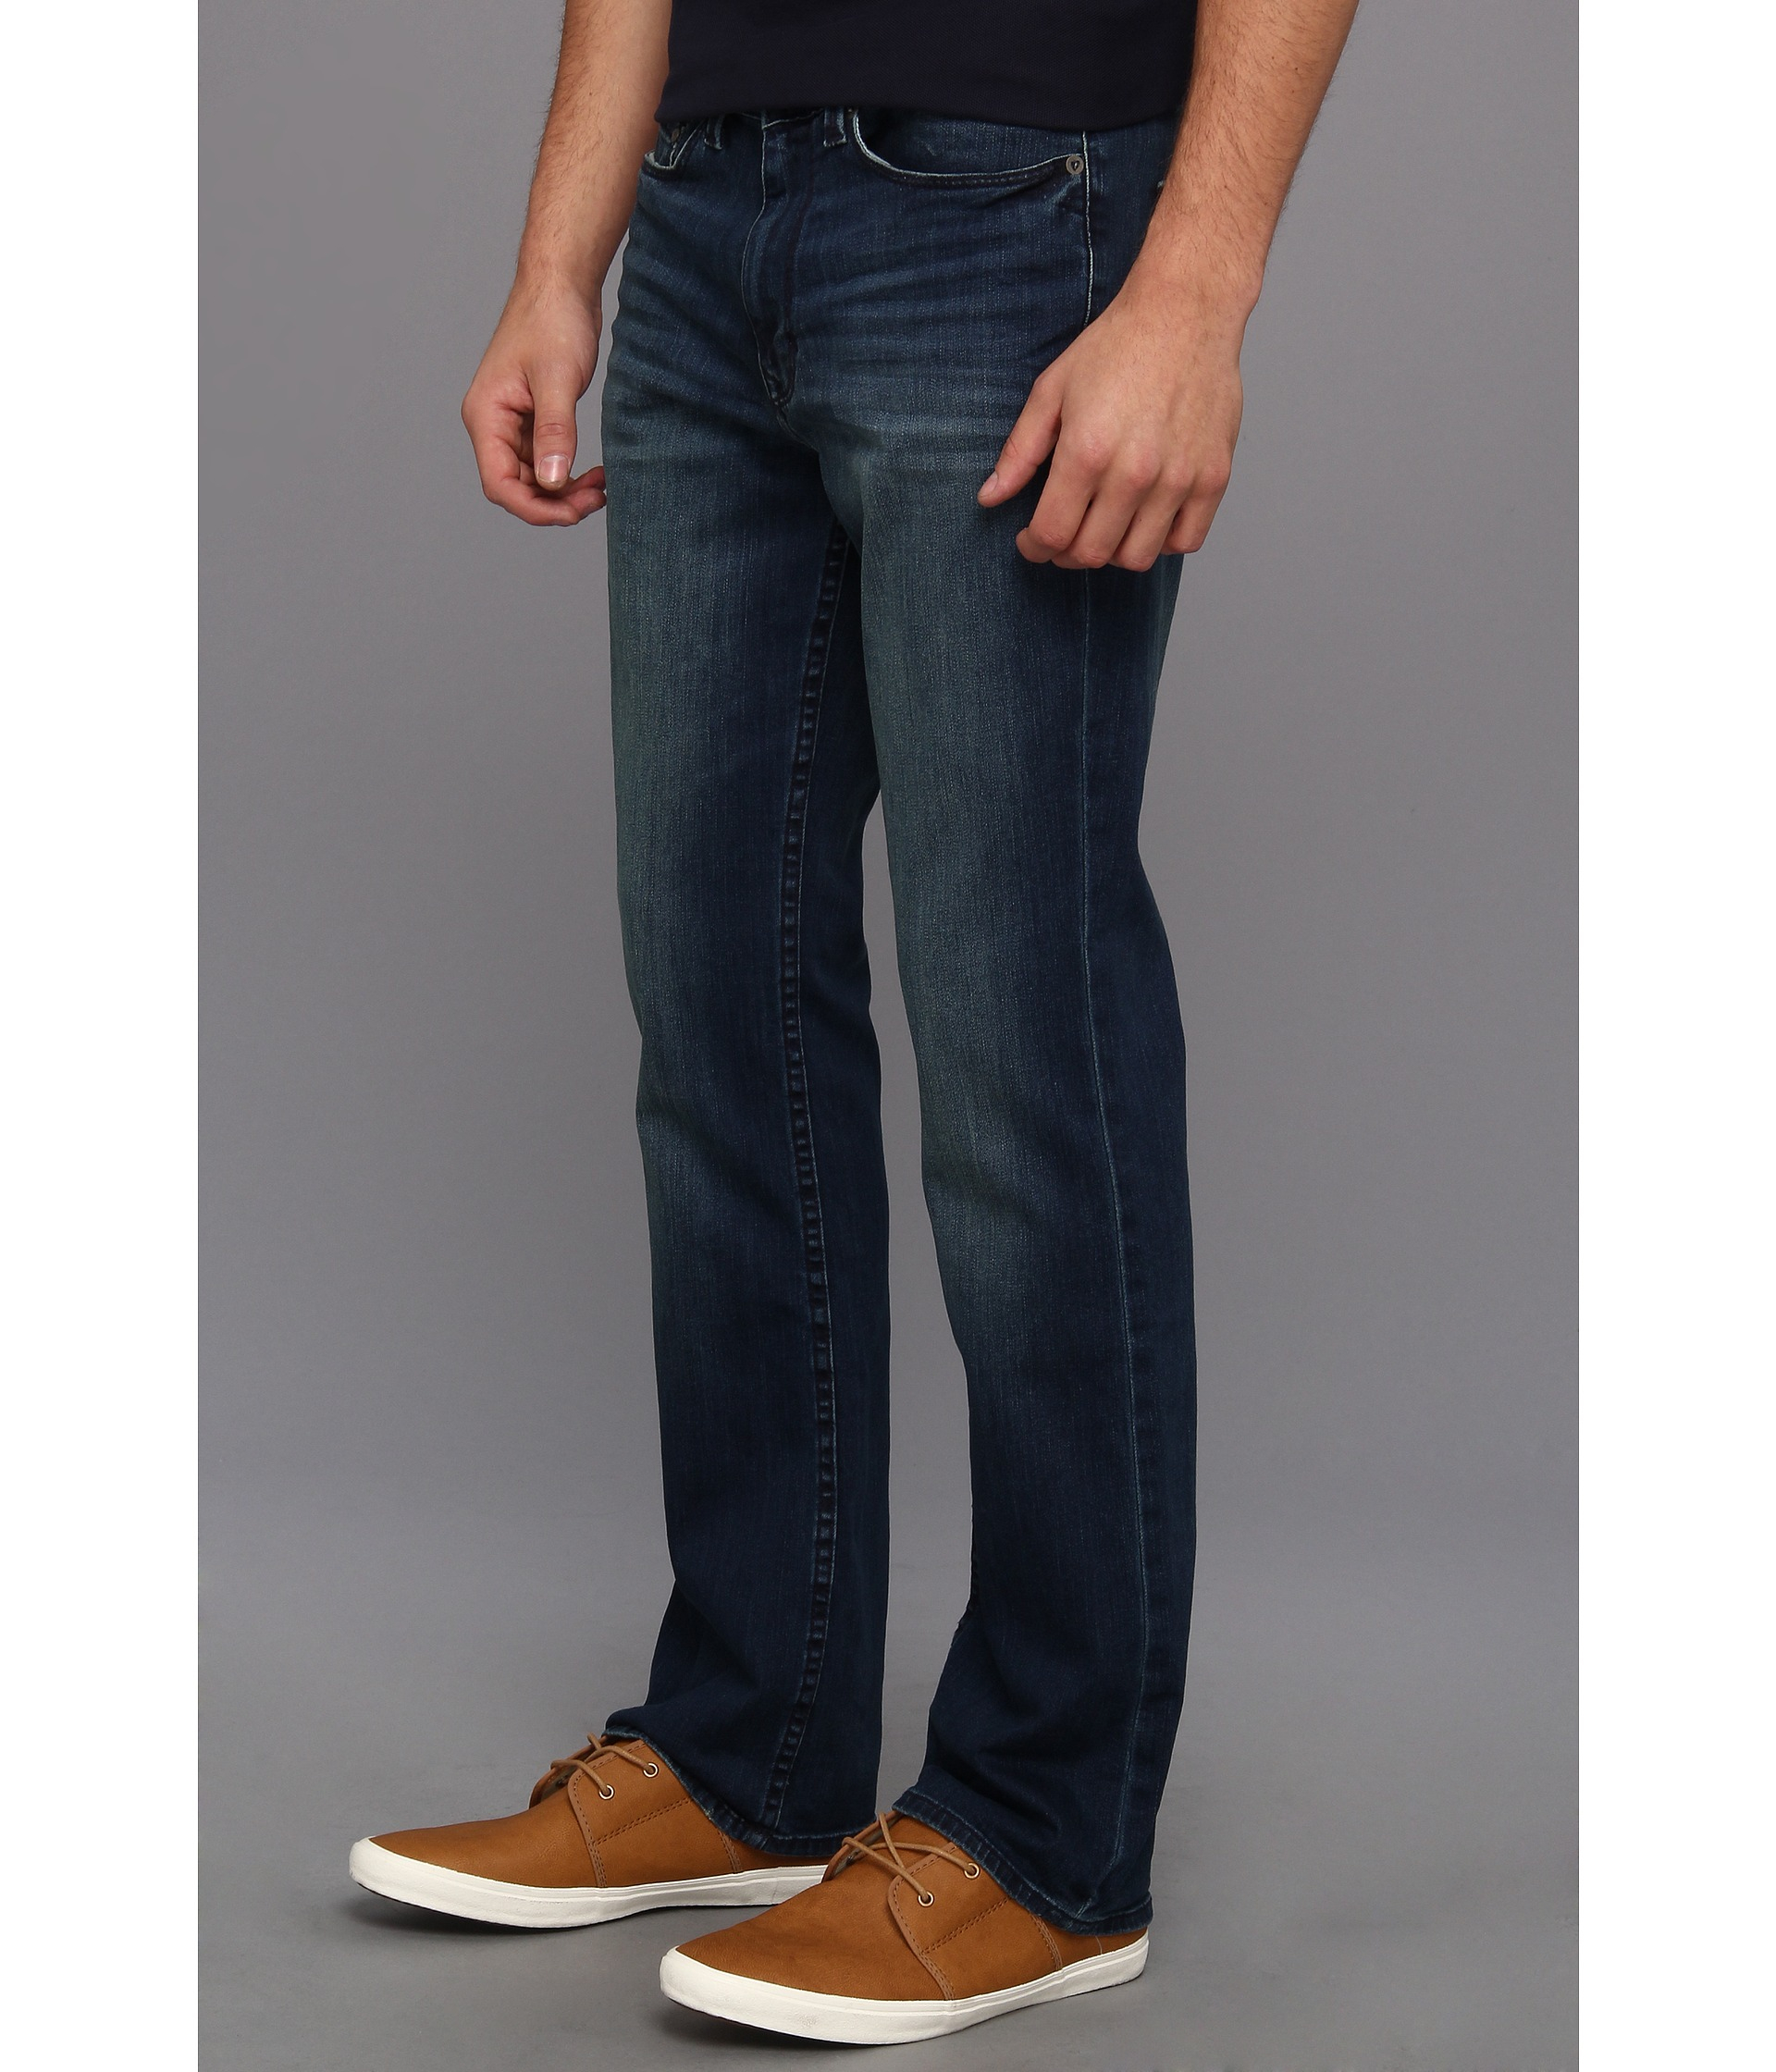 Lyst - Calvin klein jeans Modern Boot Nova Denim In Medium Wash in Blue ...